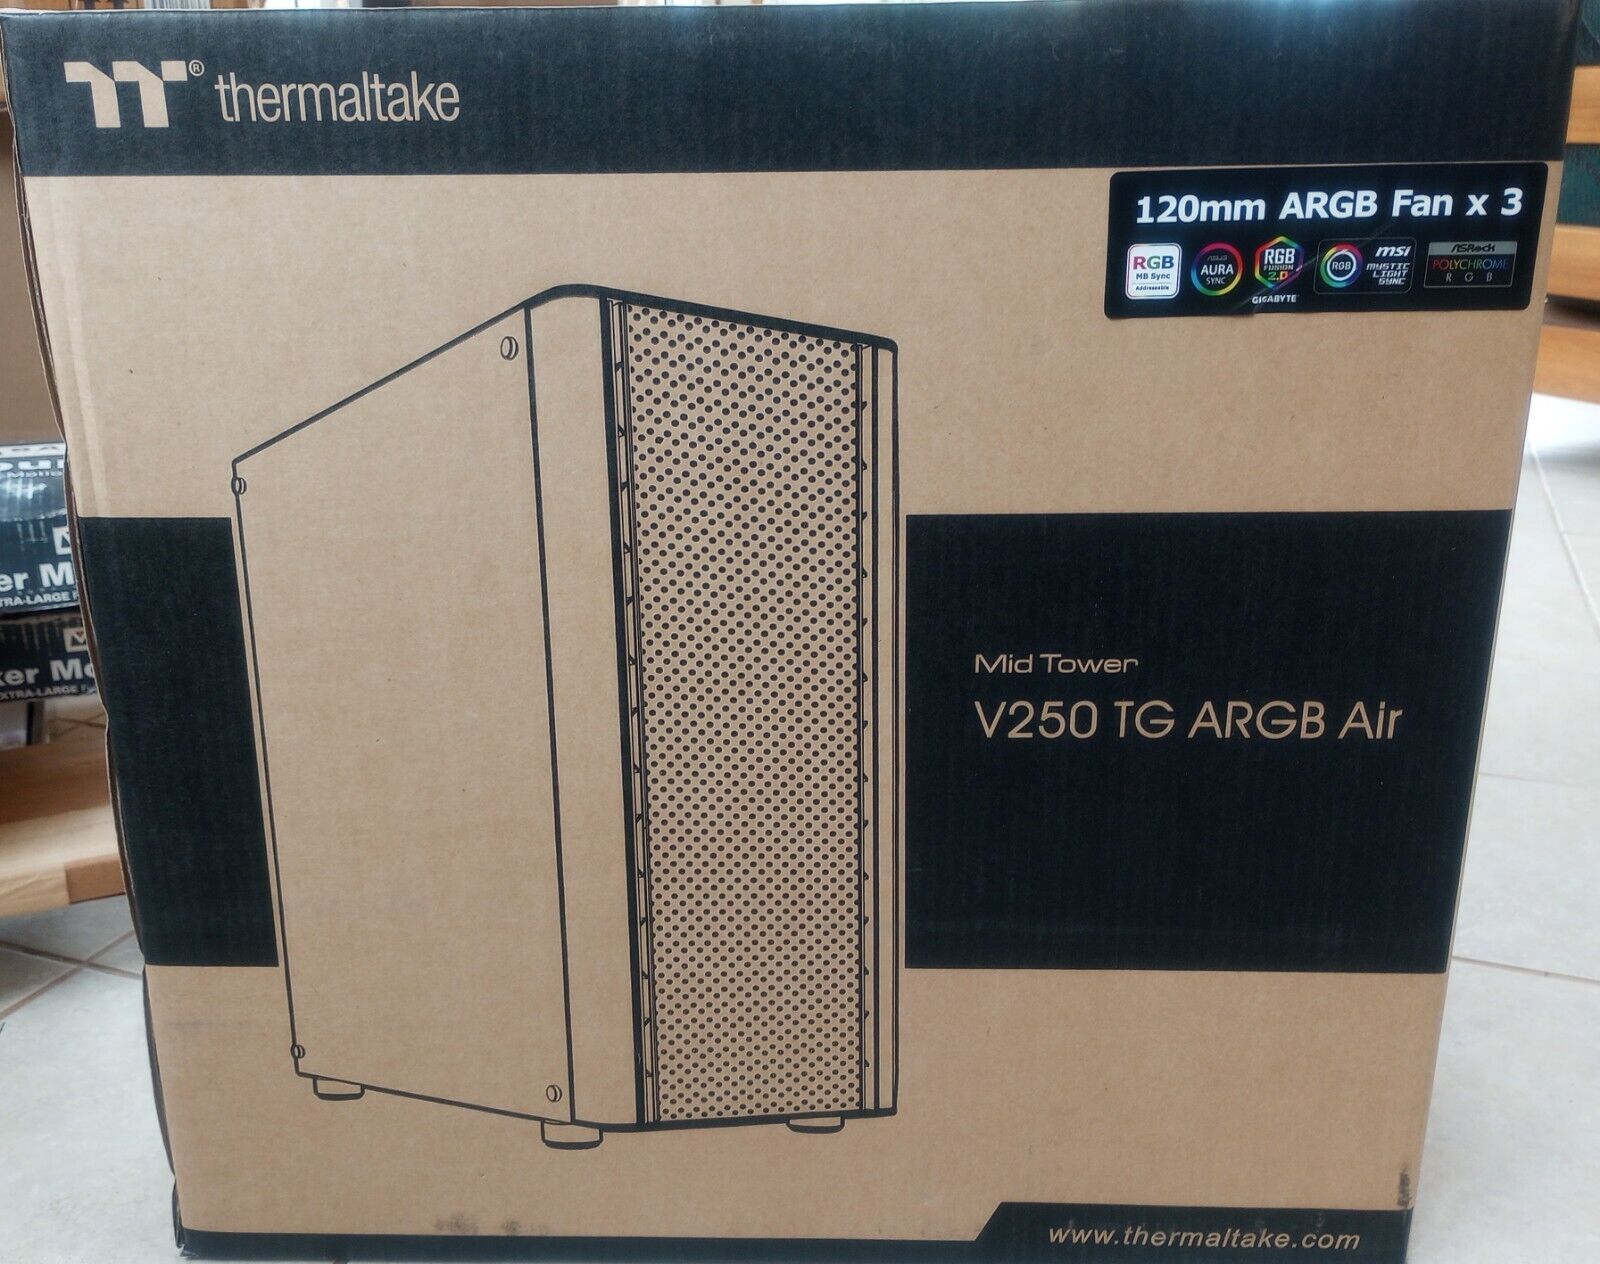 Thermaltake  V250 TG ARGB Mid-Tower Case 3 x 120mm ARGB Fan - New In Box